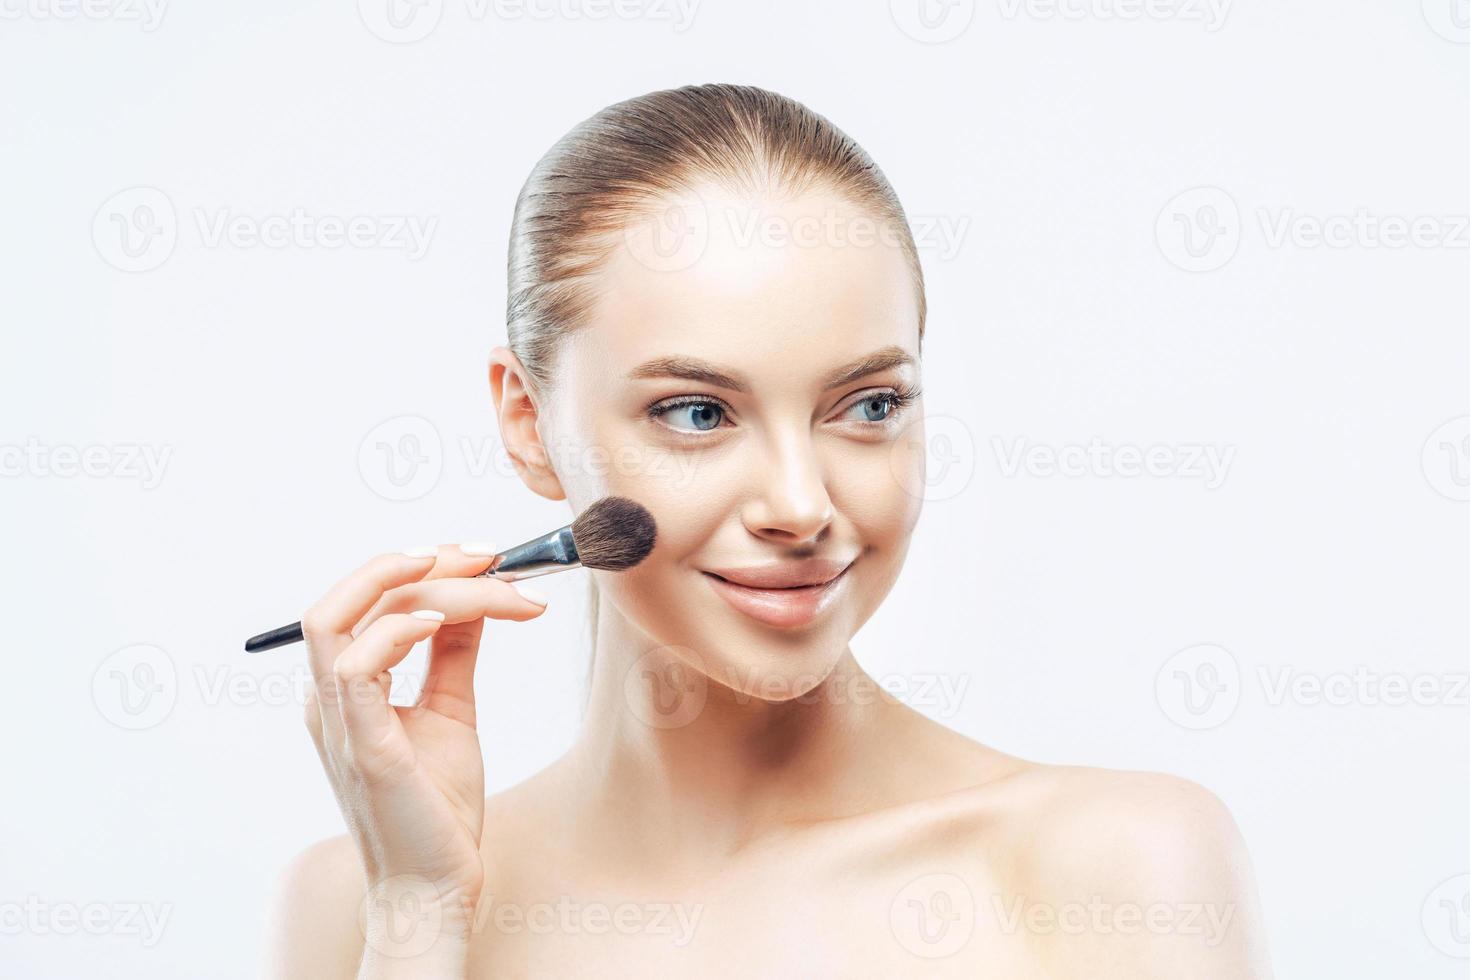 mujeres, concepto de cosmetología. tierna y saludable mujer europea da una lección de maquillaje, aplica cosméticos con un cepillo de belleza, mira a un lado con una sonrisa, aislada de fondo blanco, muestra un cuerpo desnudo perfecto foto